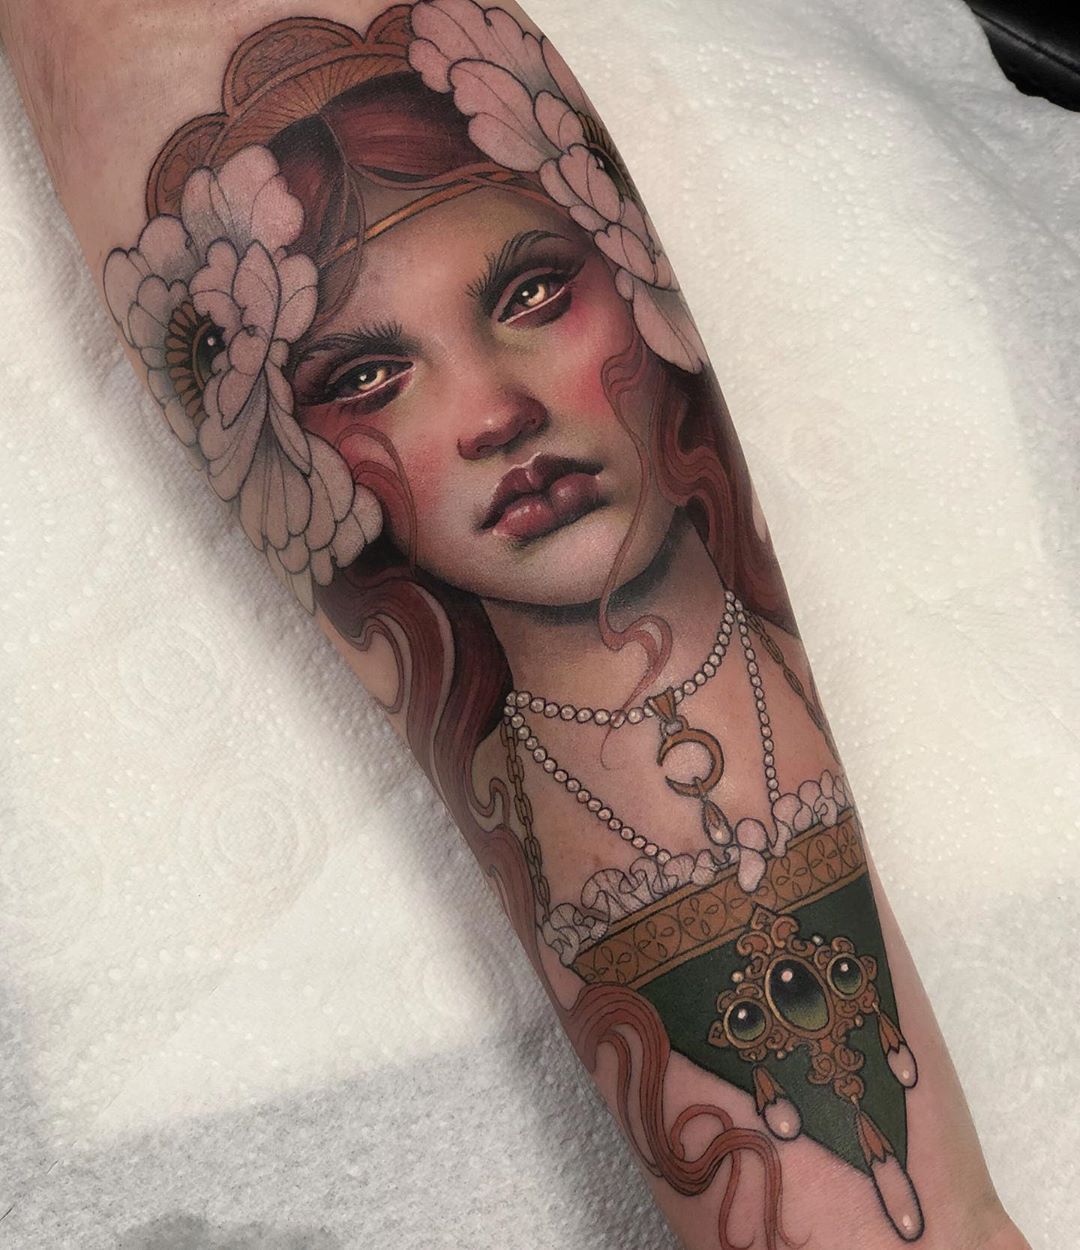 tattoome:
“Hannah Flowers
”